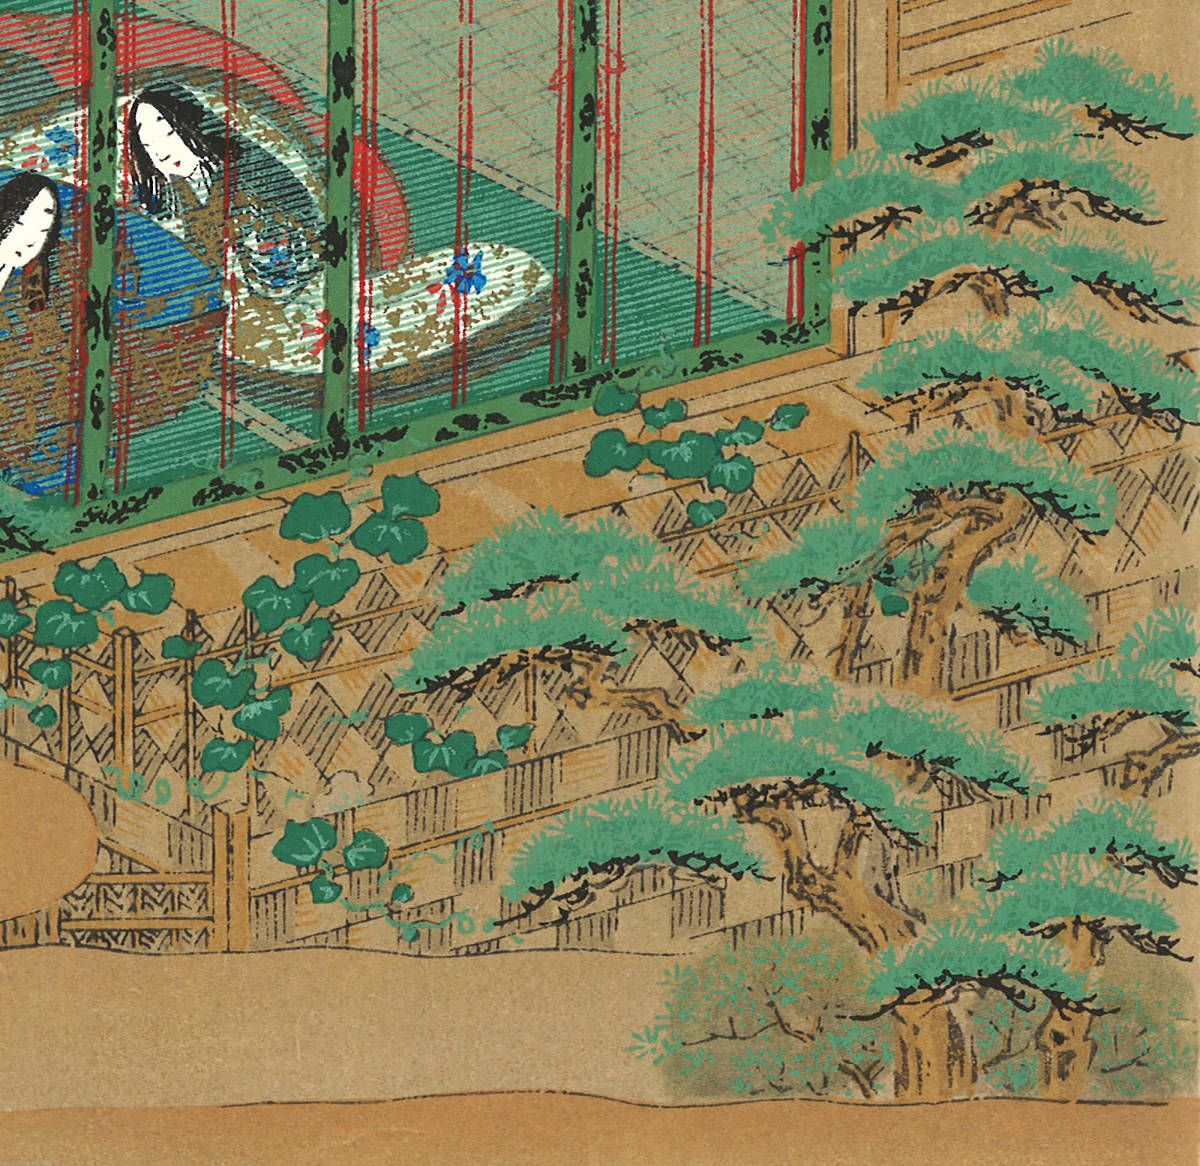 土佐光起 (Tosa Mitsuoki) 木版画 源氏物語 No15 夕顔 初版 幕末 一流の摺師の技による貴重な作品を是非ご堪能下さい